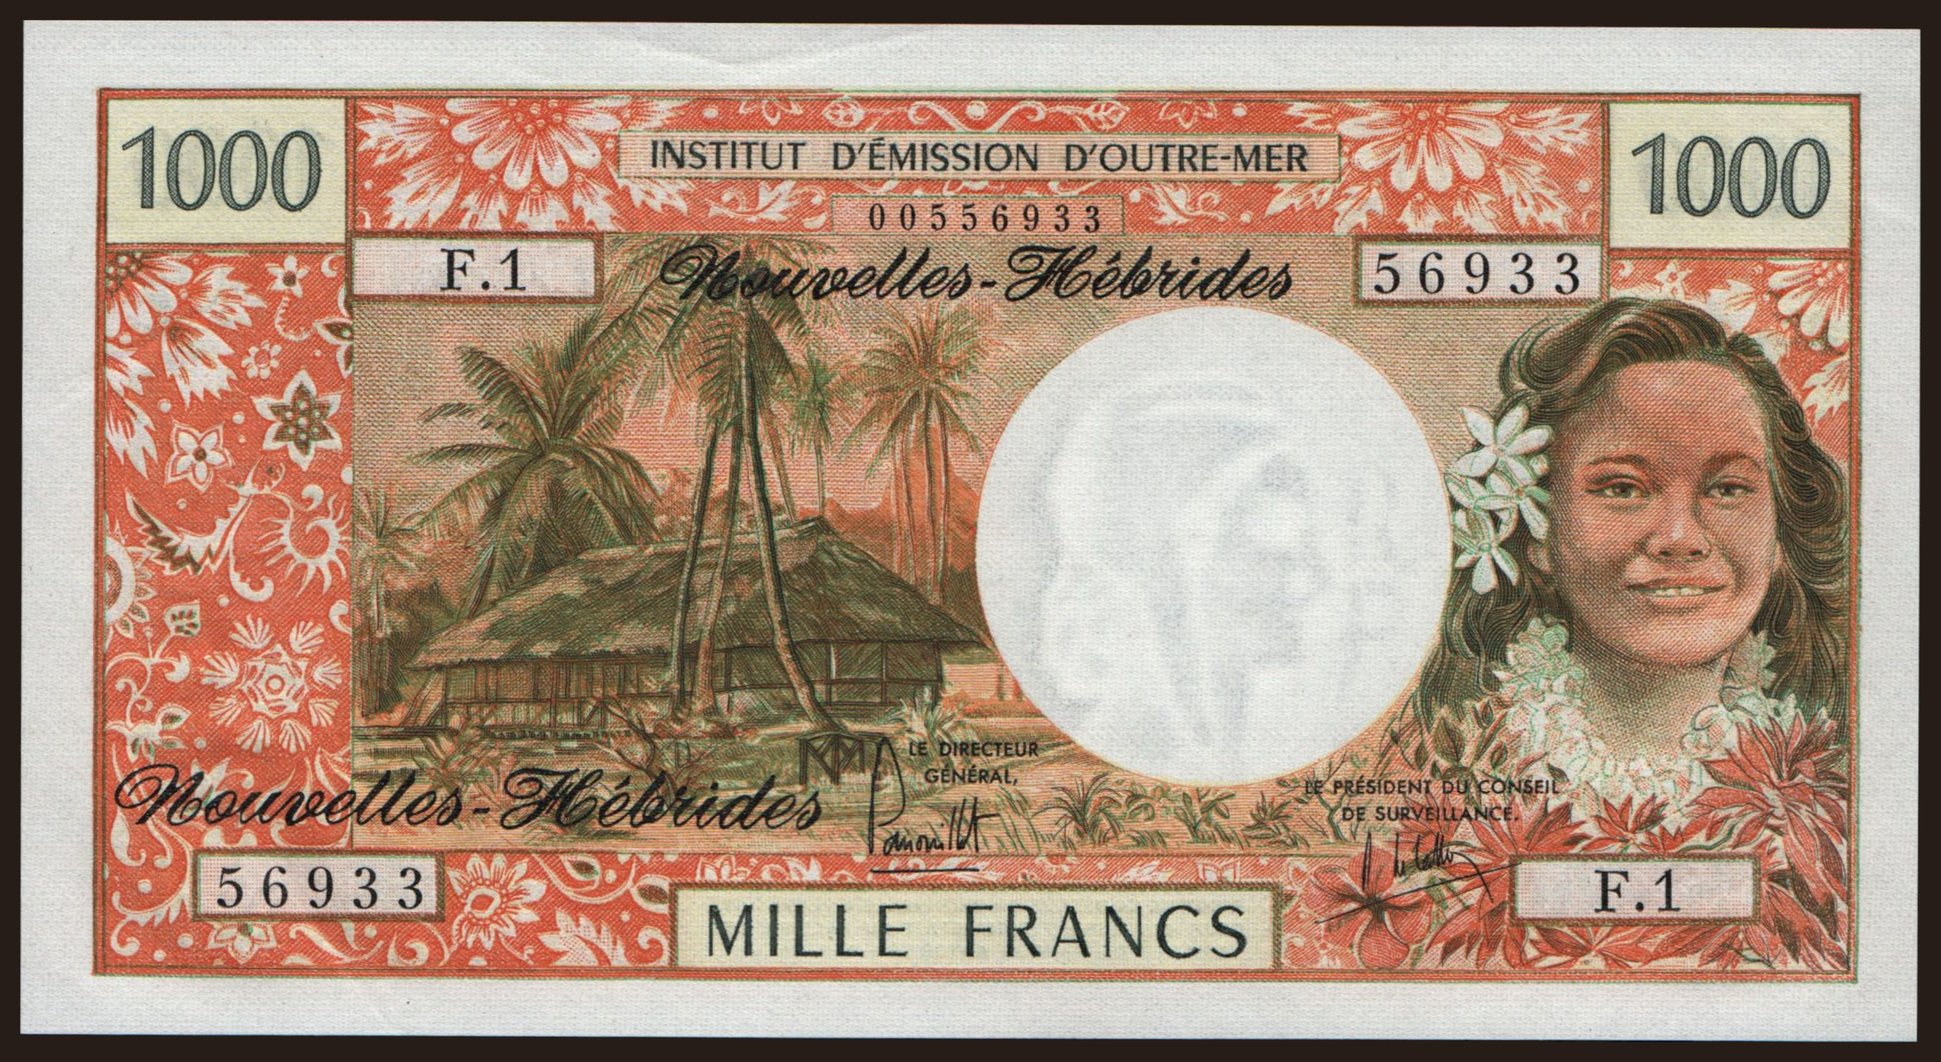 1000 francs, 1975